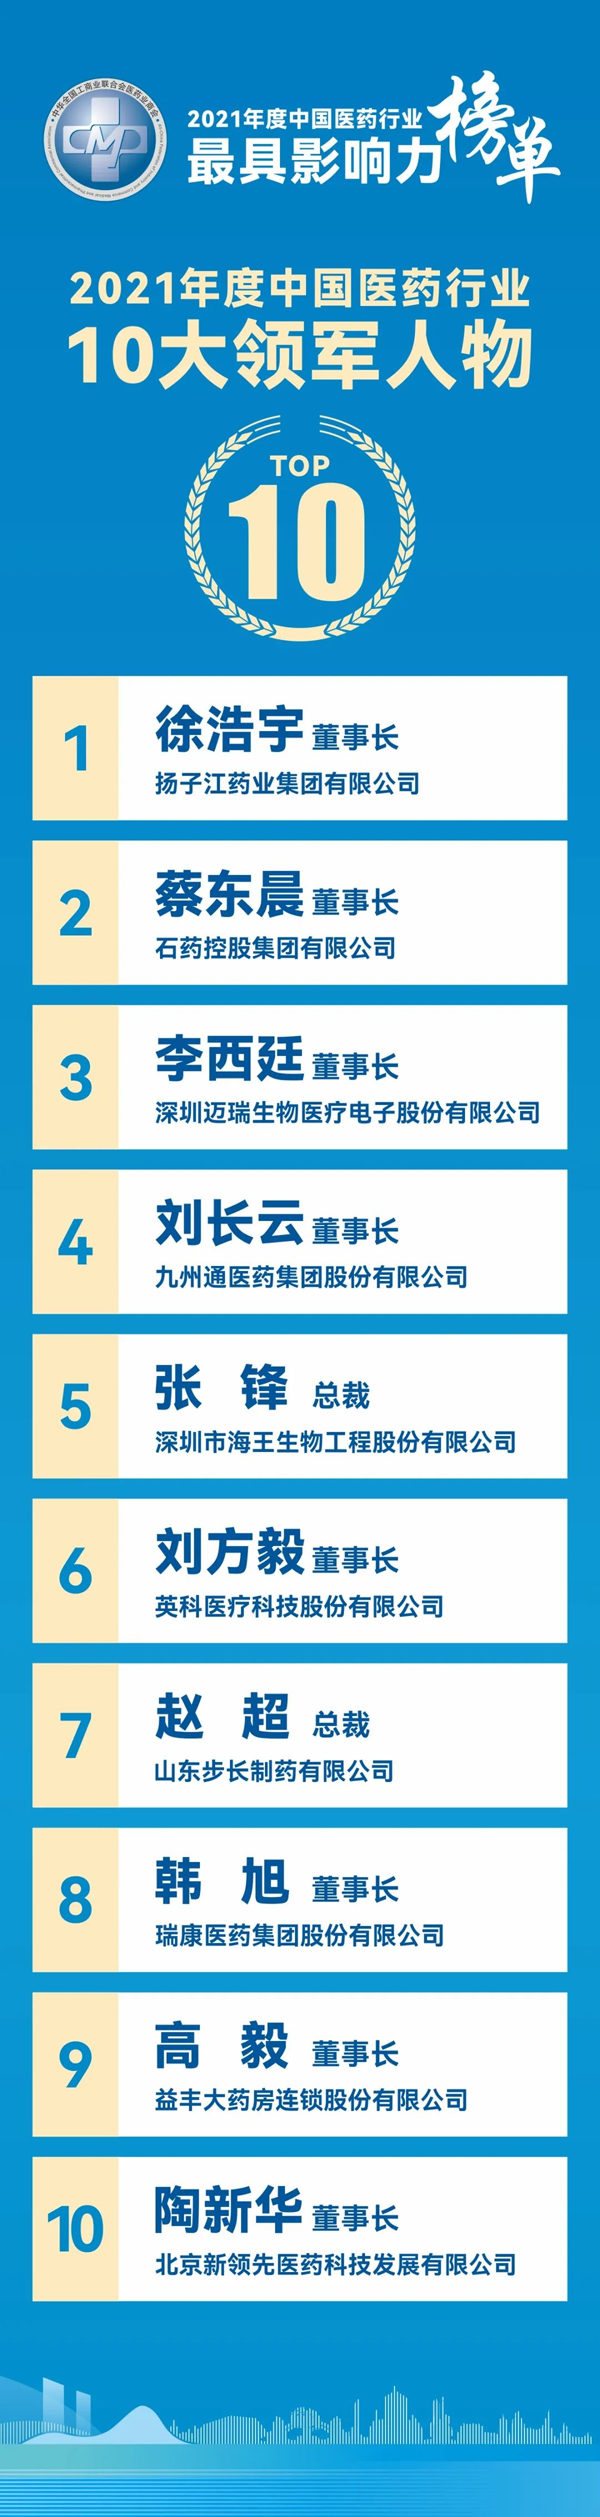 扬子江药业集团登顶“2021年度中国医药制造业百强”榜单